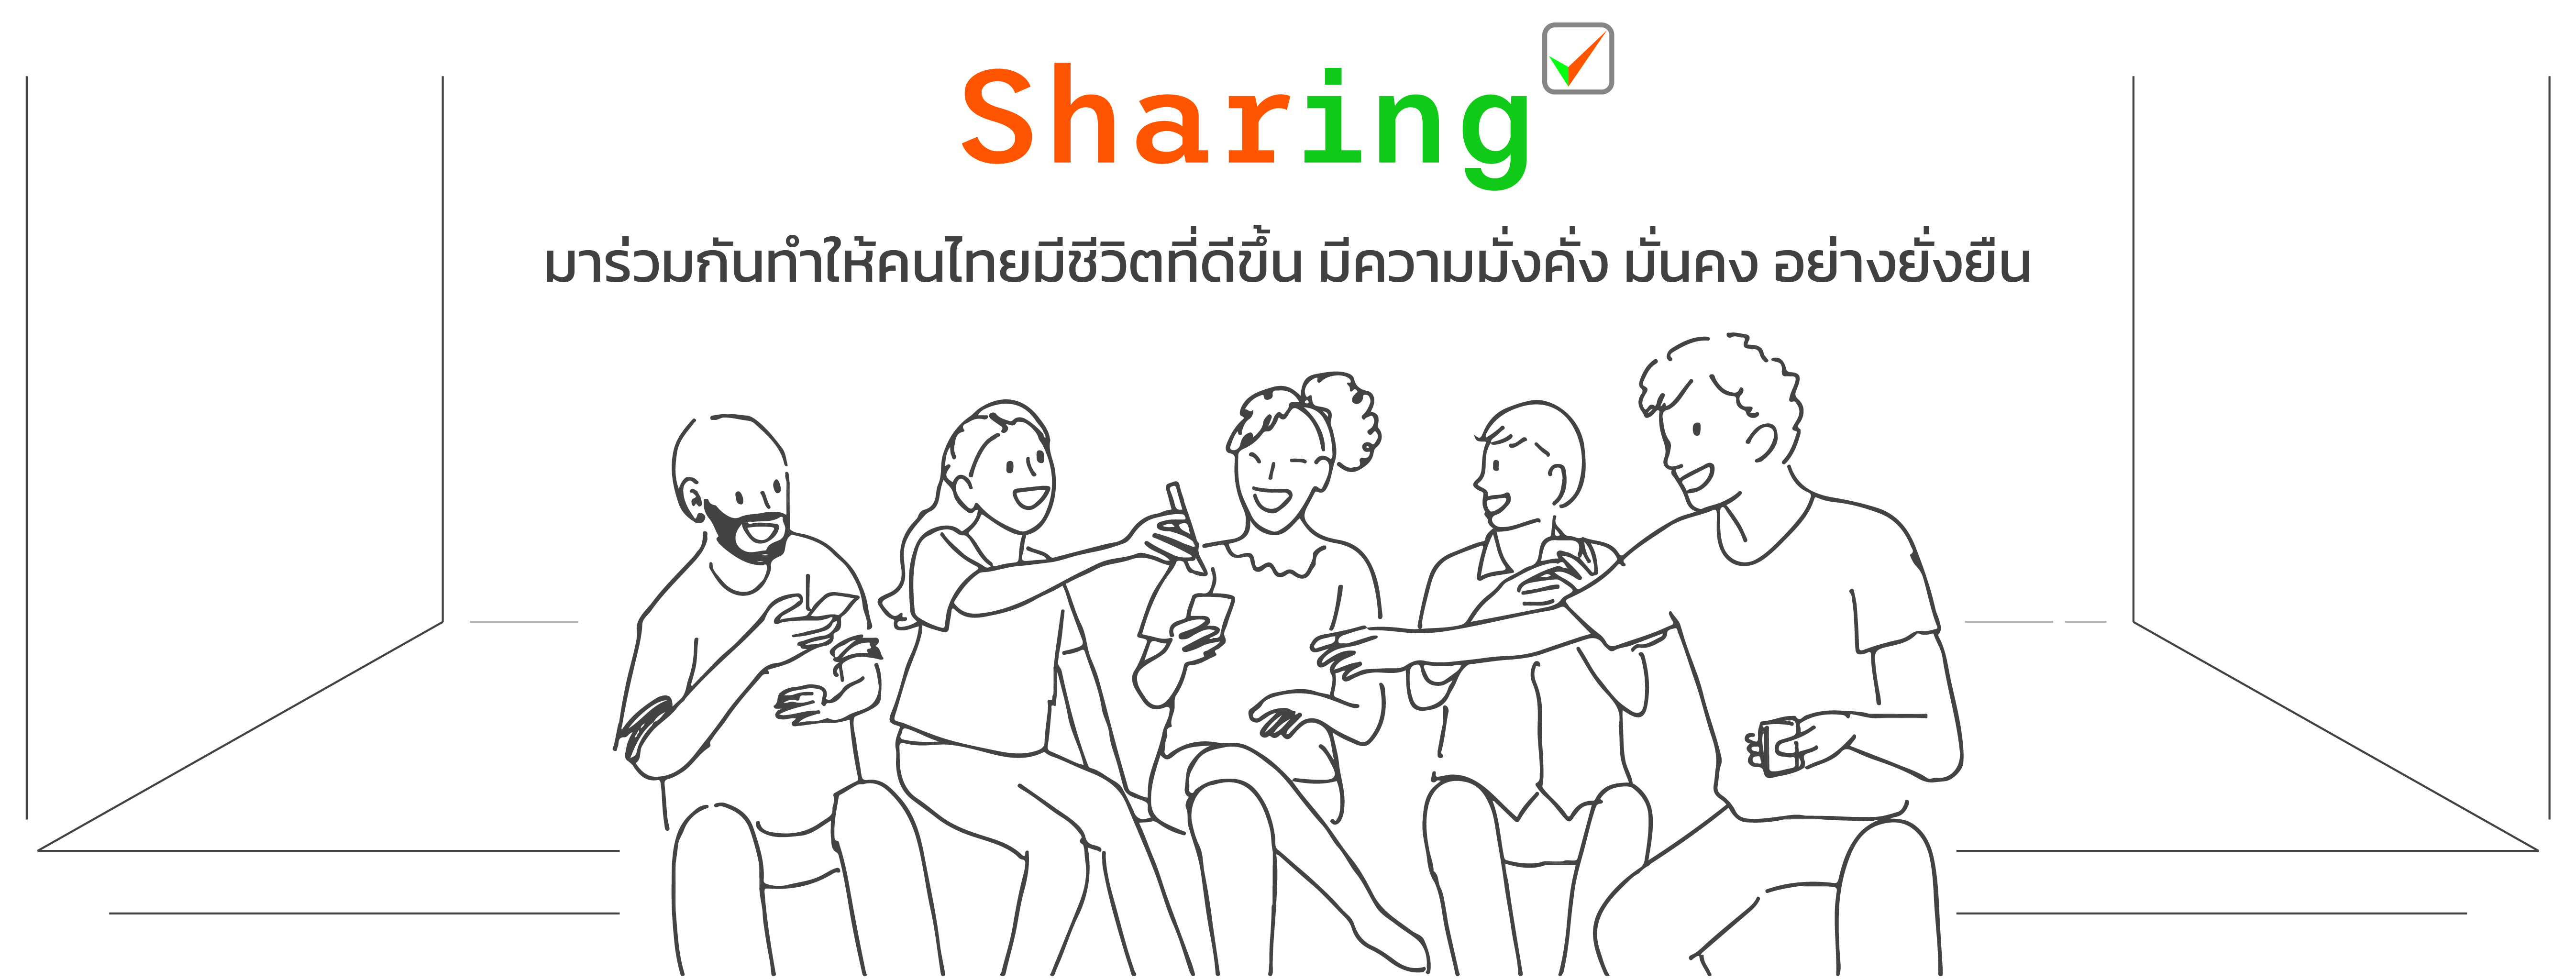 thaipfa มาร่วมกันเป็นส่วนหนึ่งของการเปลี่ยนแปลงให้คนไทยมีชีวิตที่ดีขึ้น